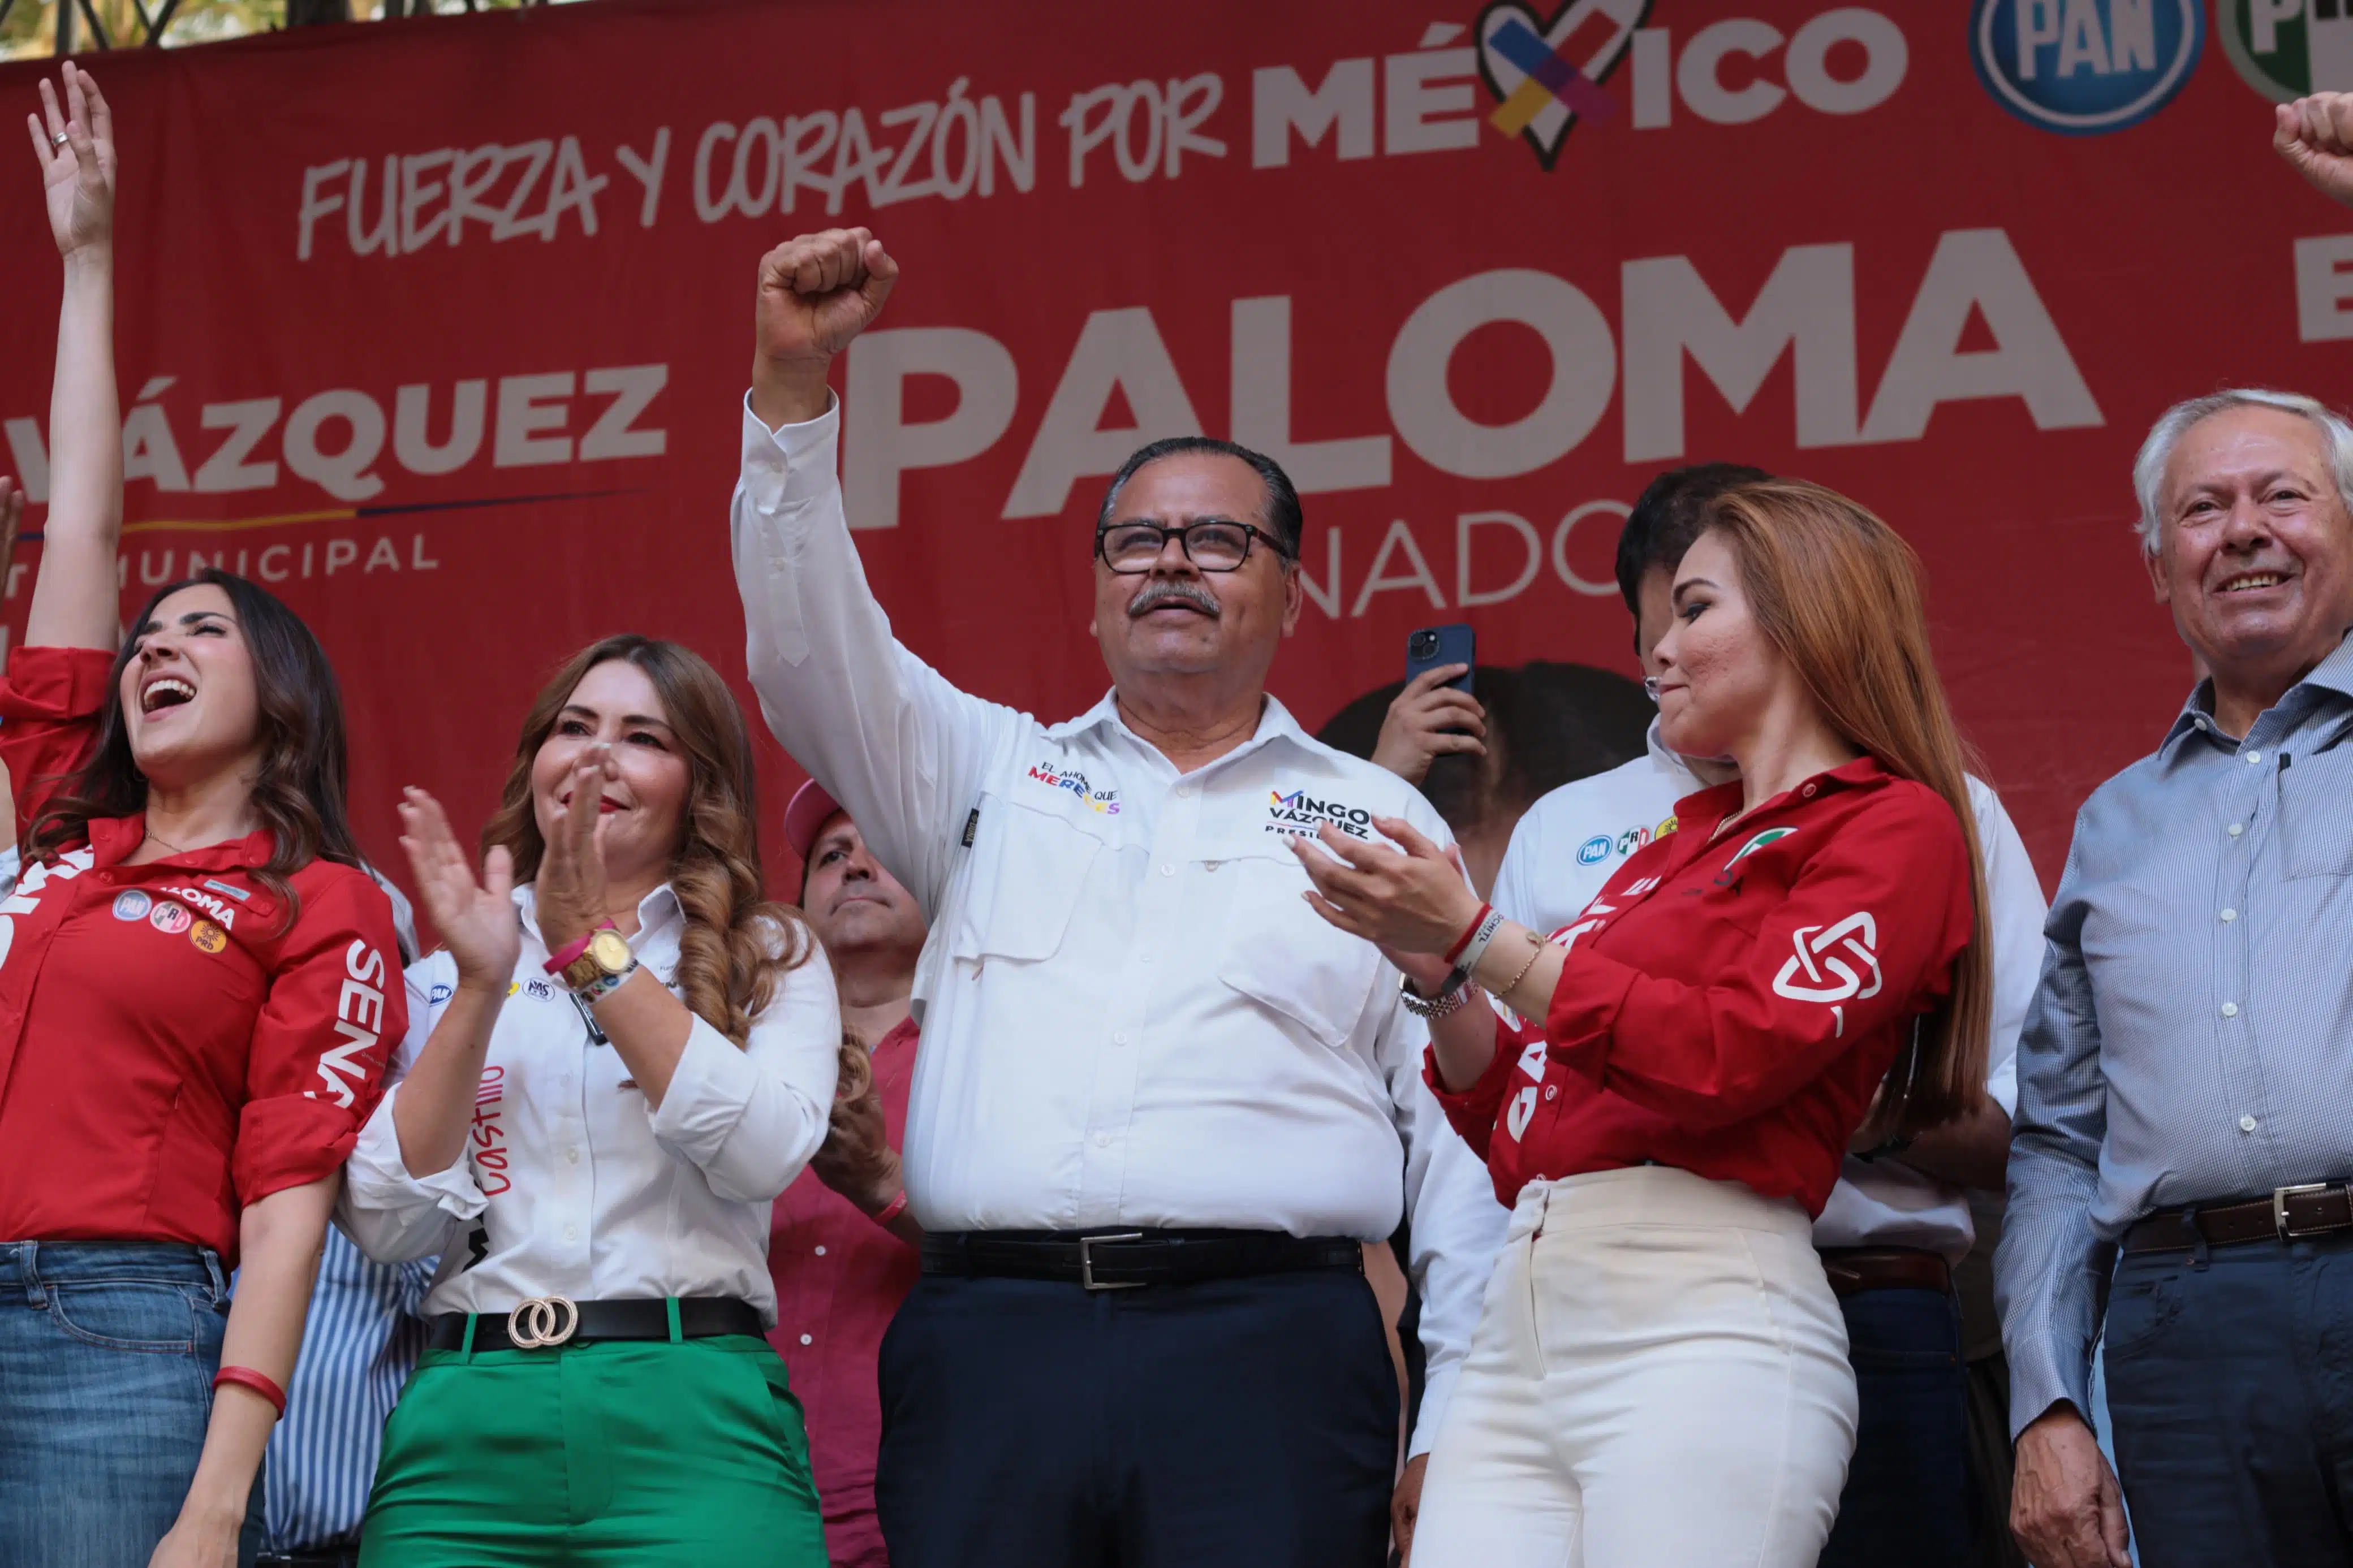 Cierre de campaña del candidato Domingo “Mingo” Vázquez